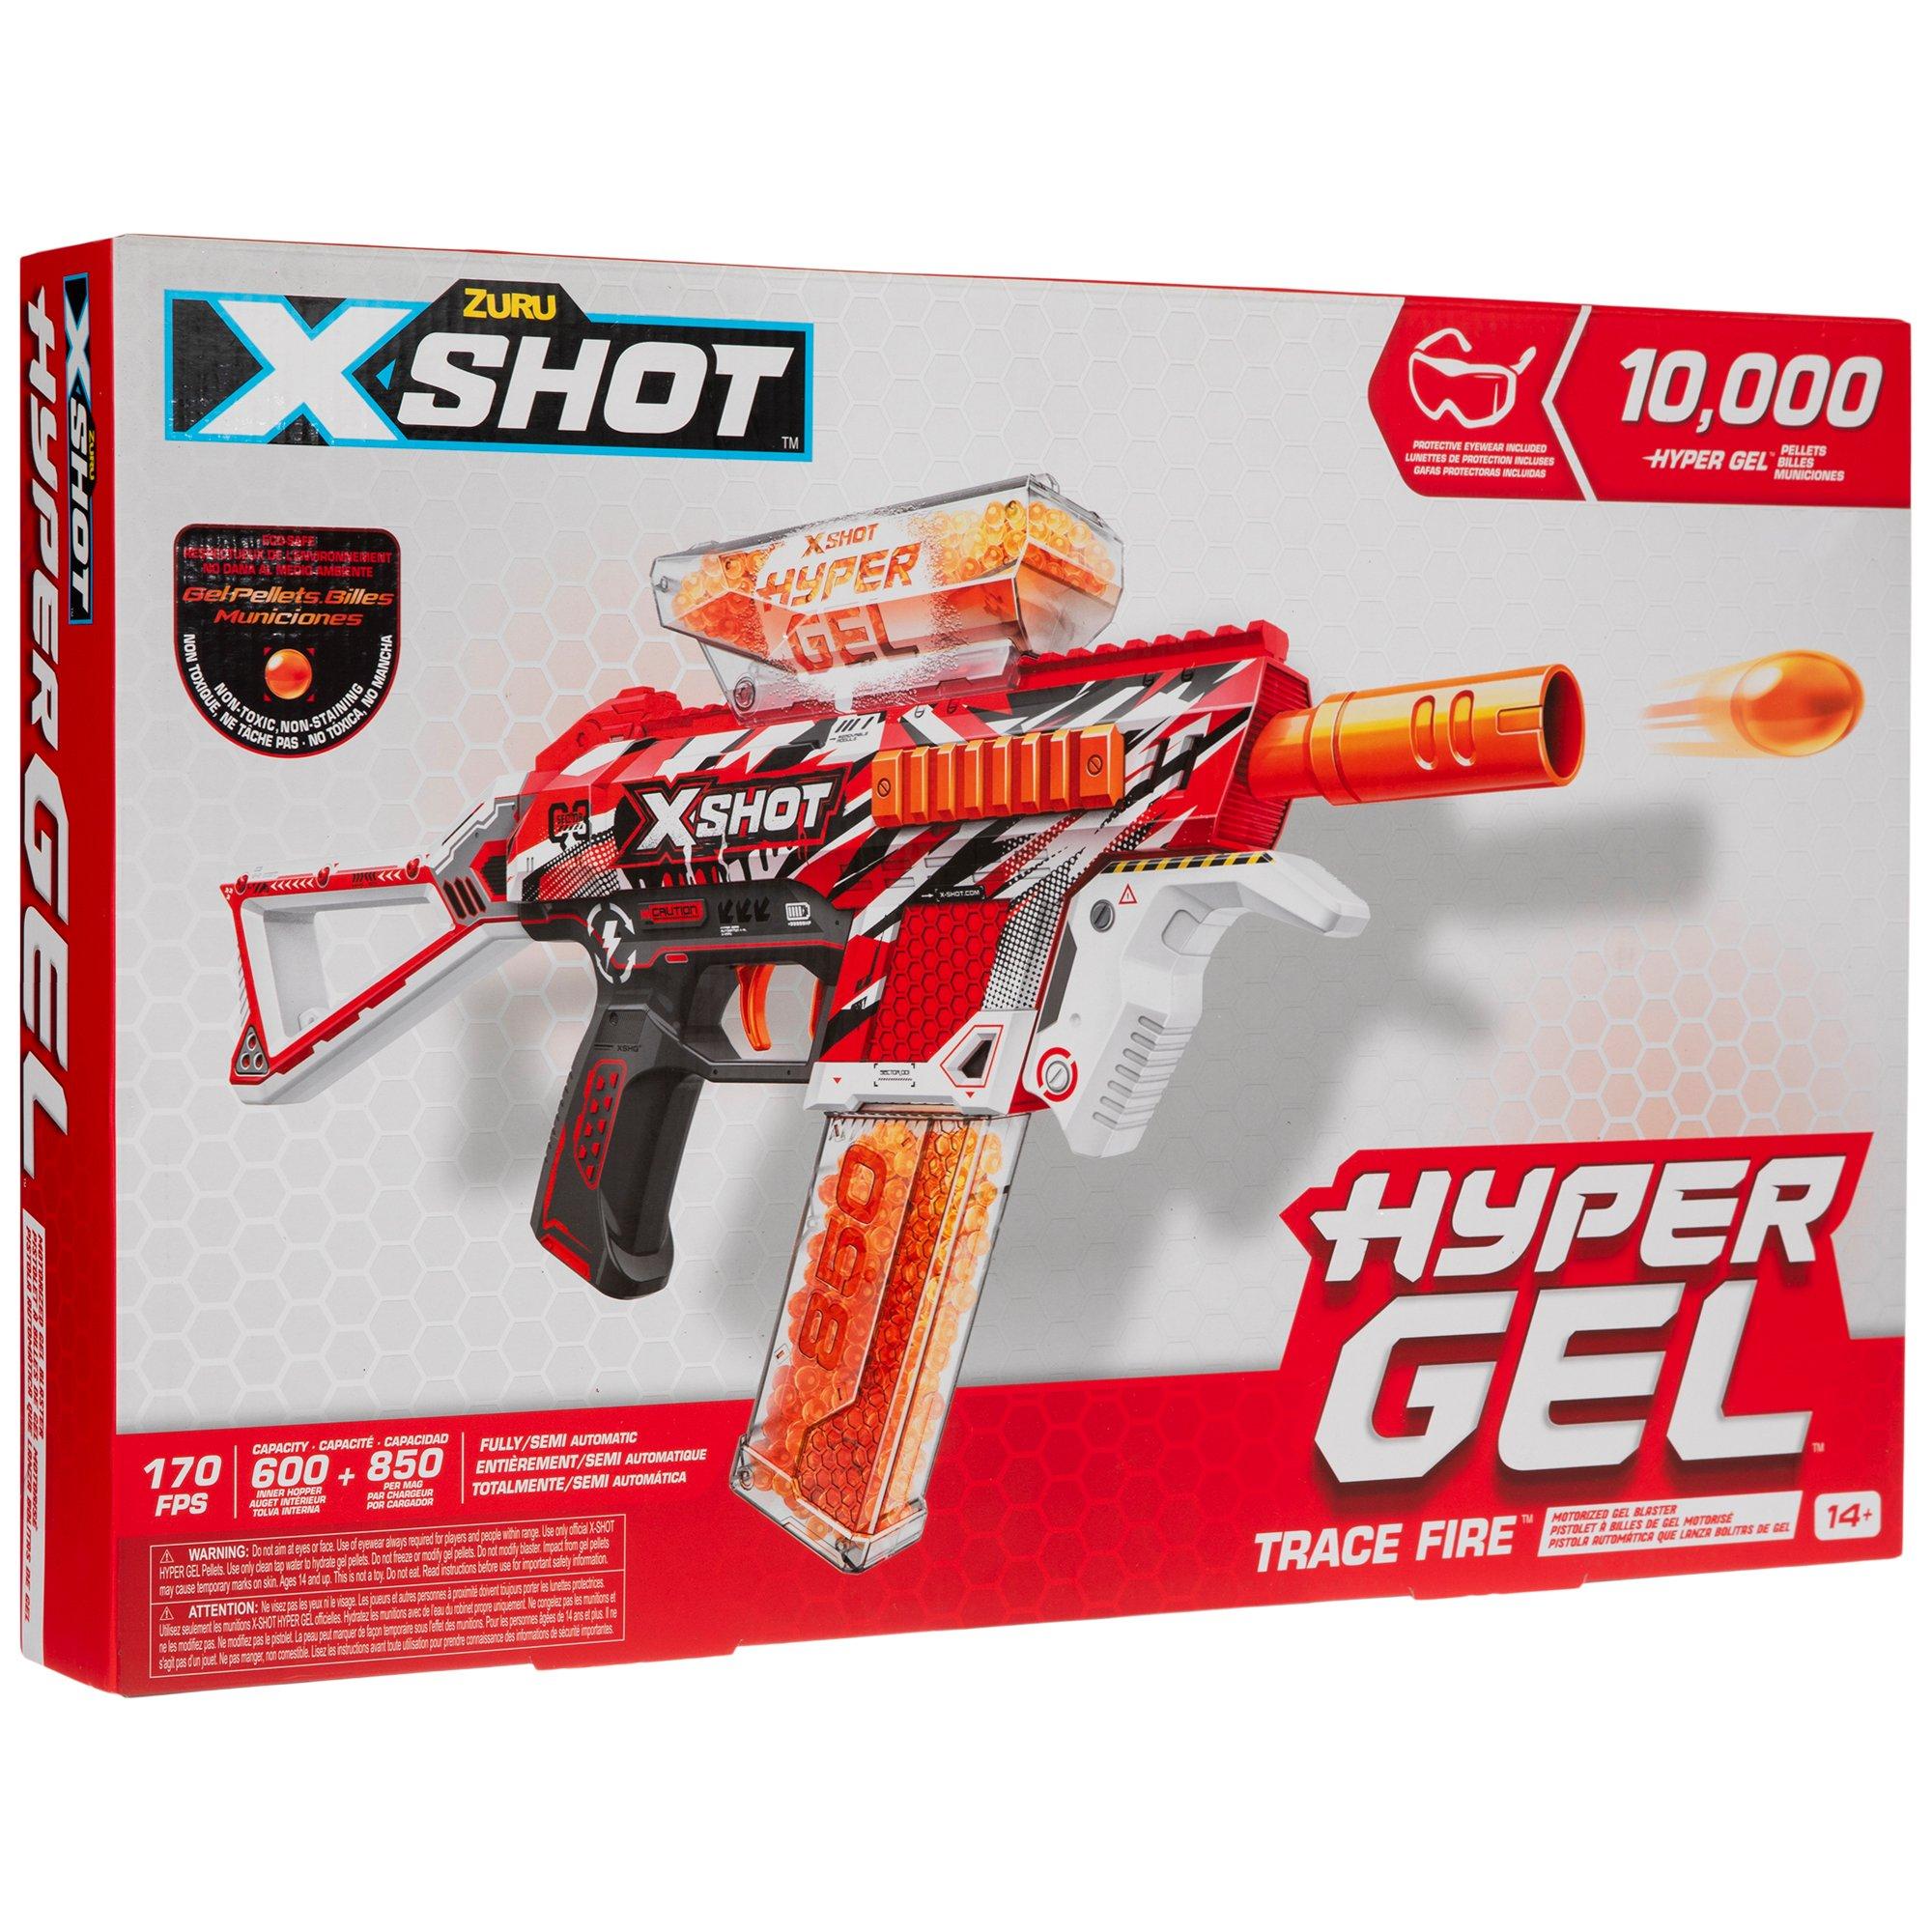 X shot hyper gel ⚠️⚠️#fakegun #zone74loisirspaintball #perrignier ⚠️⚠